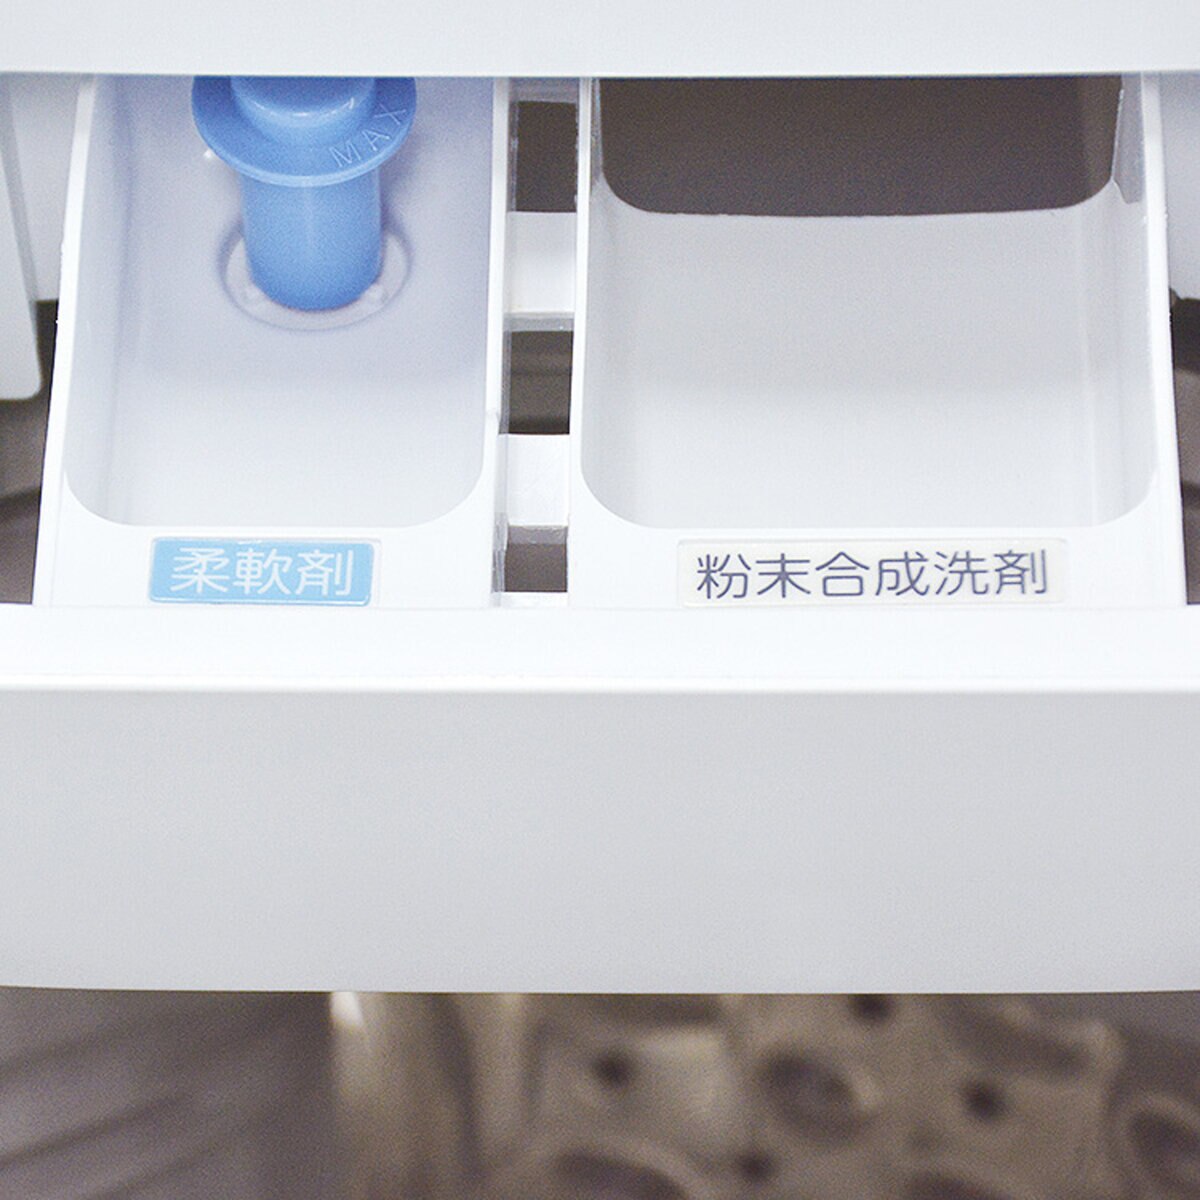 東芝 縦型洗濯機 10kg AW-10M7(W) | Costco Japan